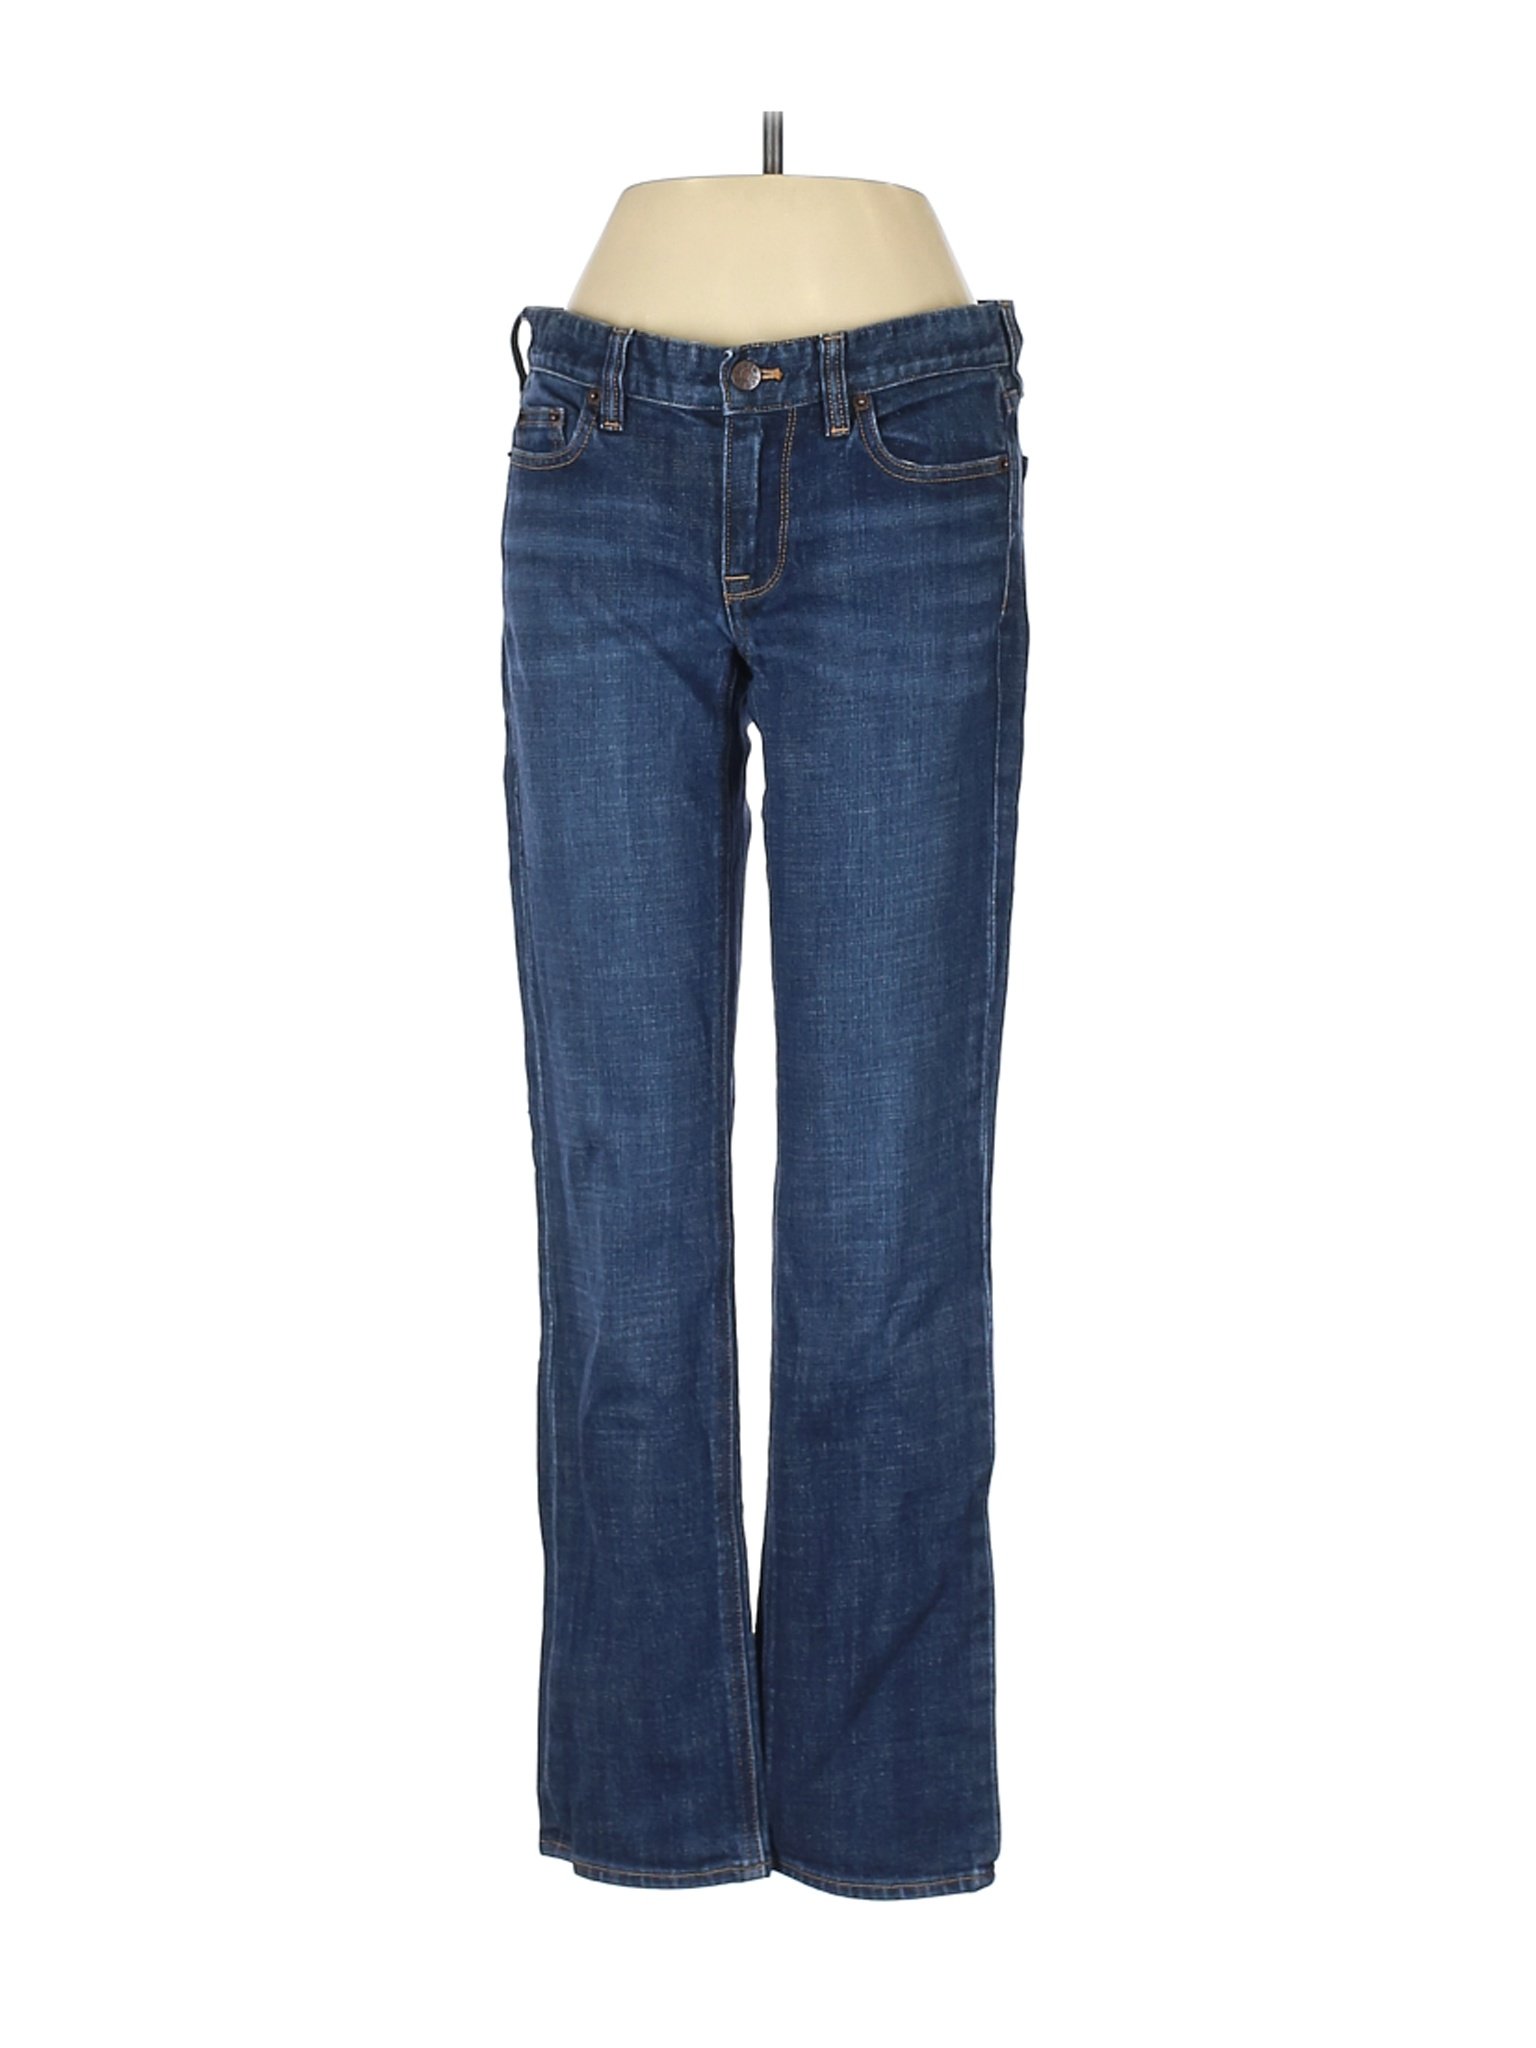 J.Crew Factory Store Women Blue Jeans 27W | eBay